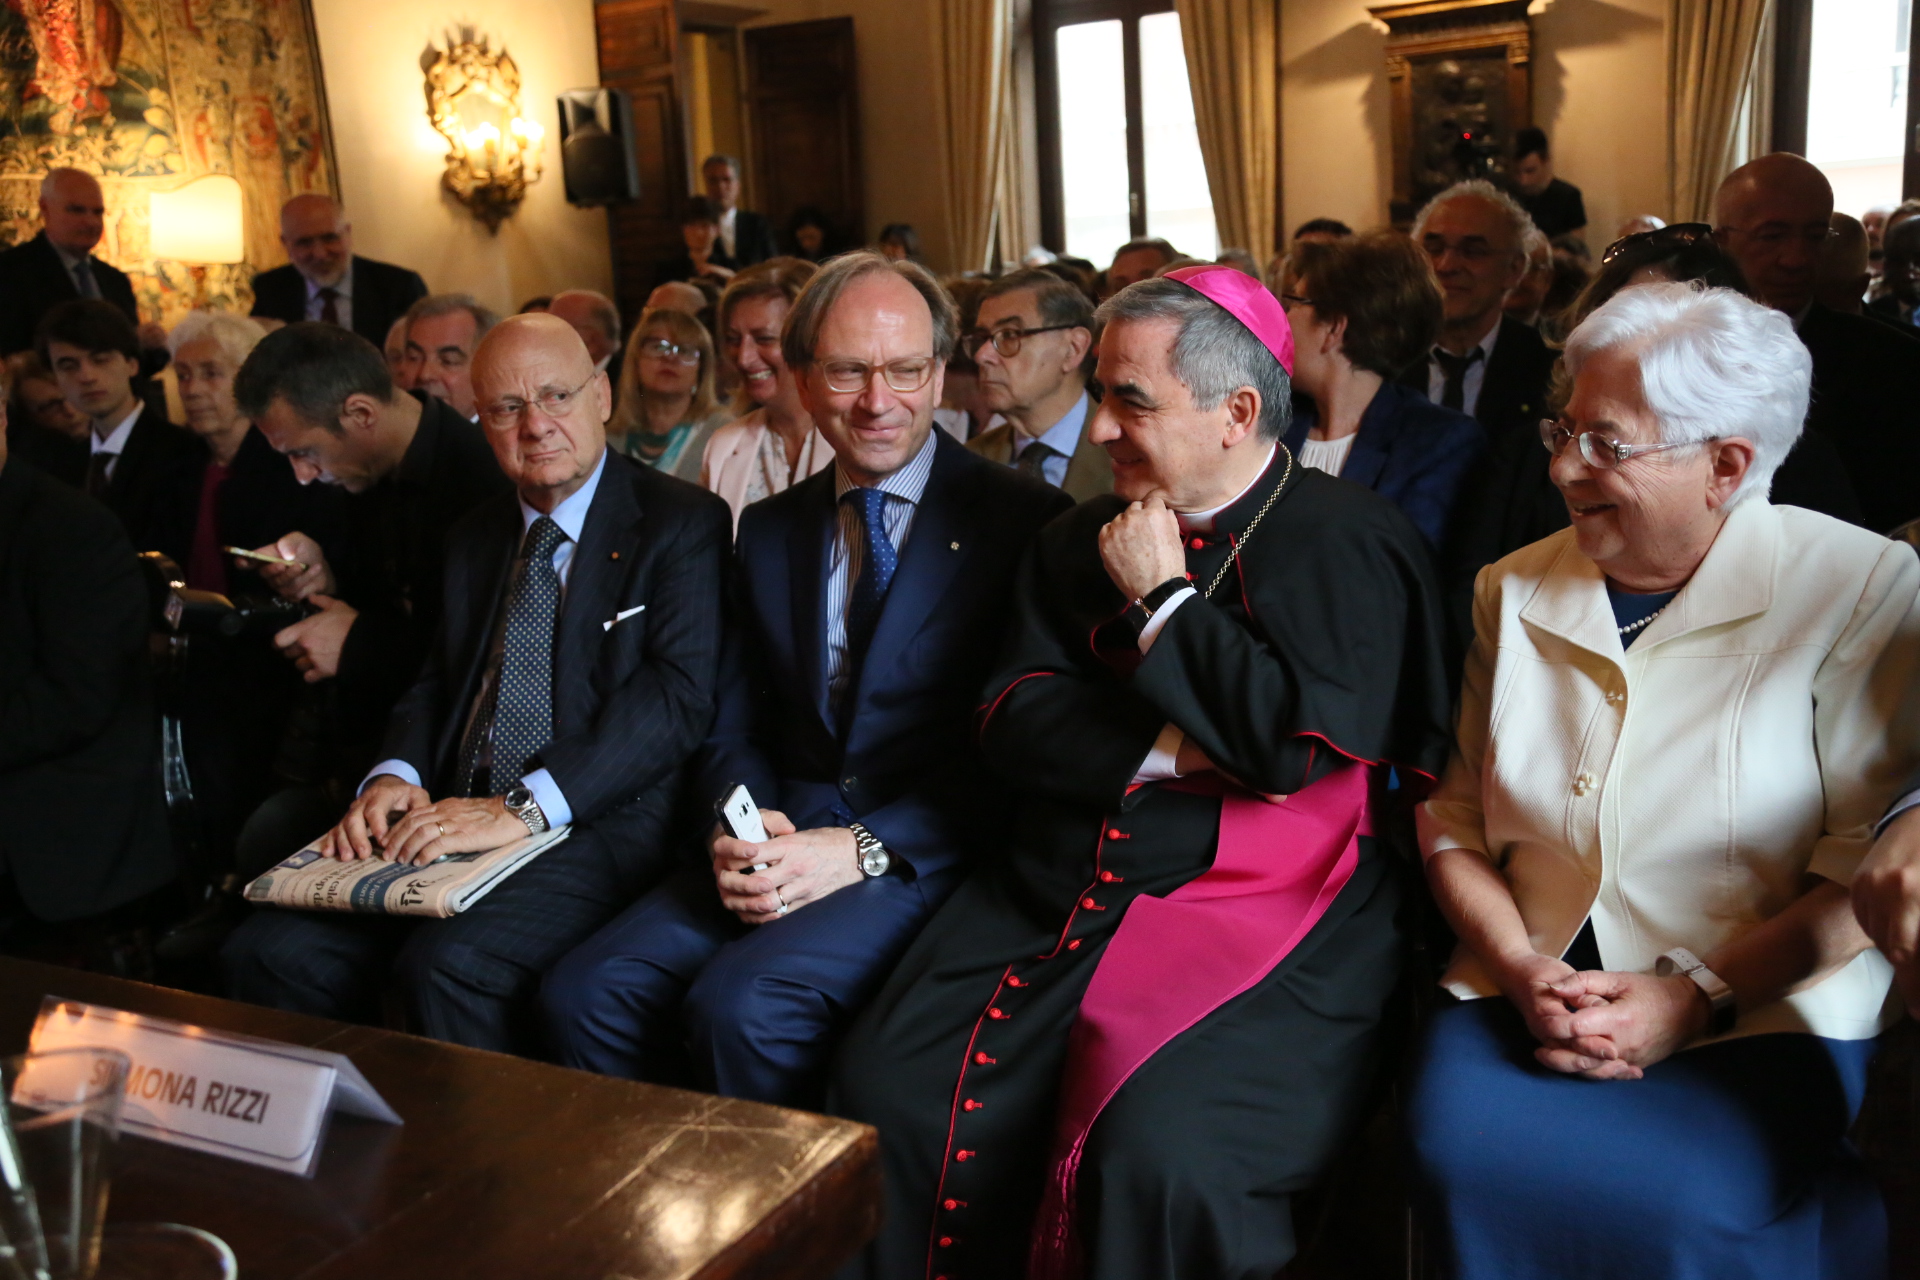 Convegno “Chiara Lubich e l’economia di comunione: il percorso di una profezia” all’Ambasciata d’Italia presso la Santa Sede e il Sovrano Militare Ordine di Malta